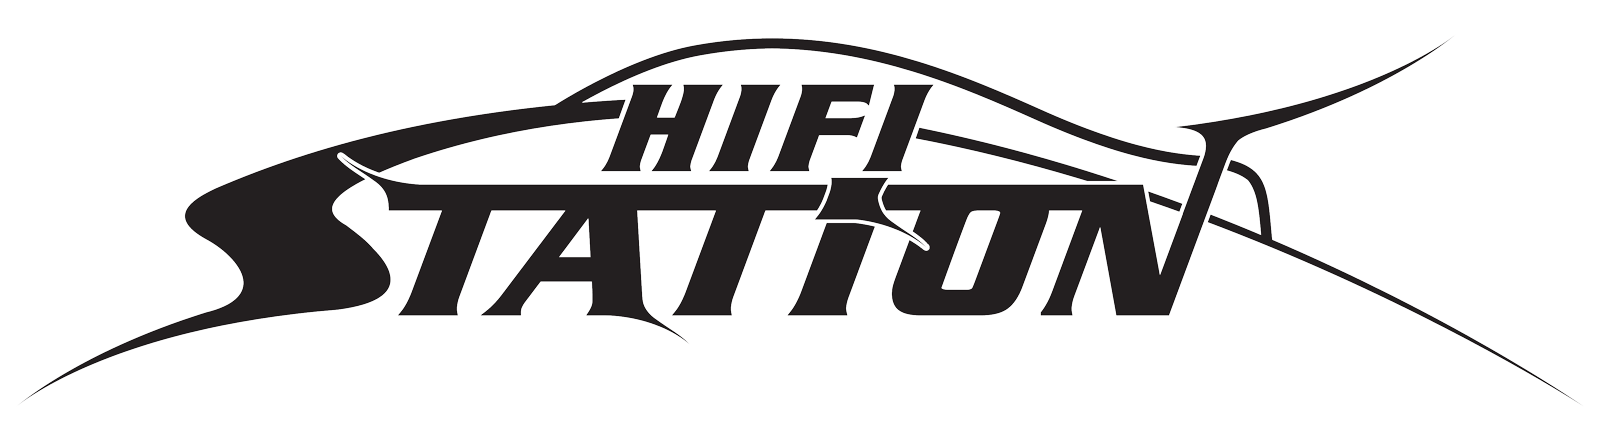 Hifi Station Kft logo